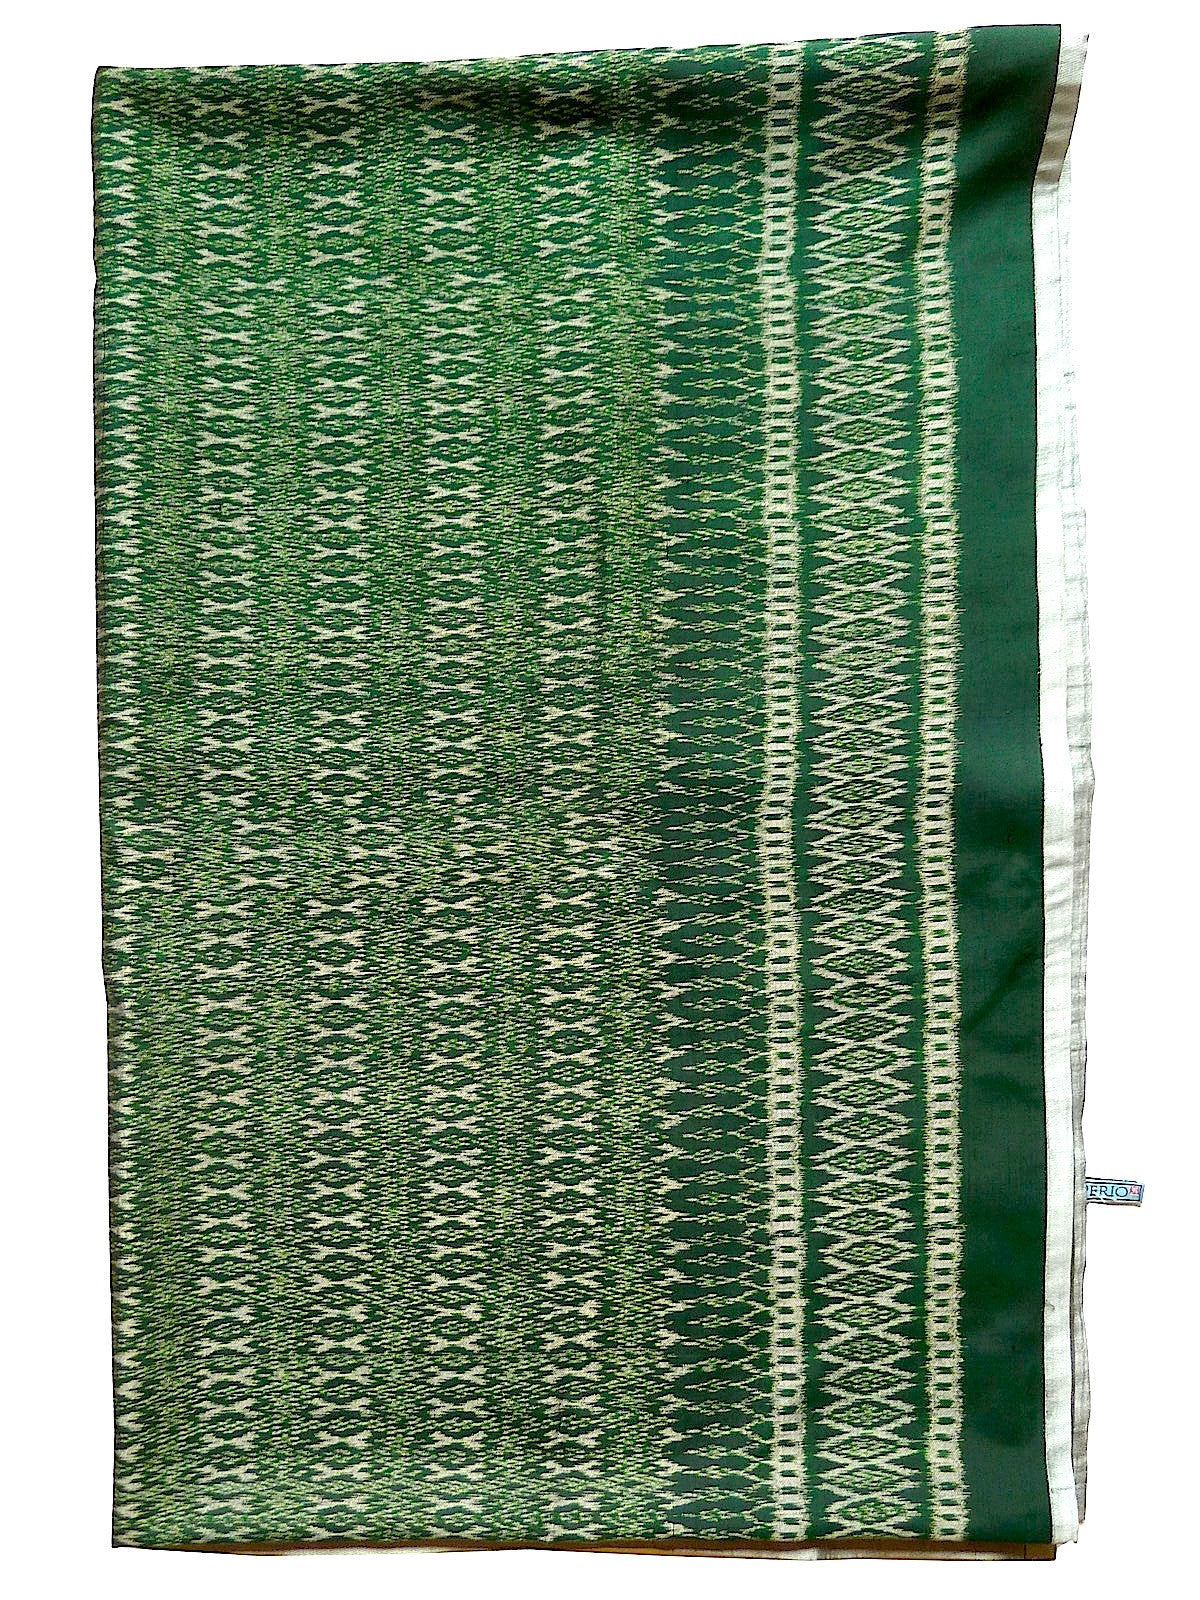 Silk Ikat Textile Wall Hanging Throw Emerald